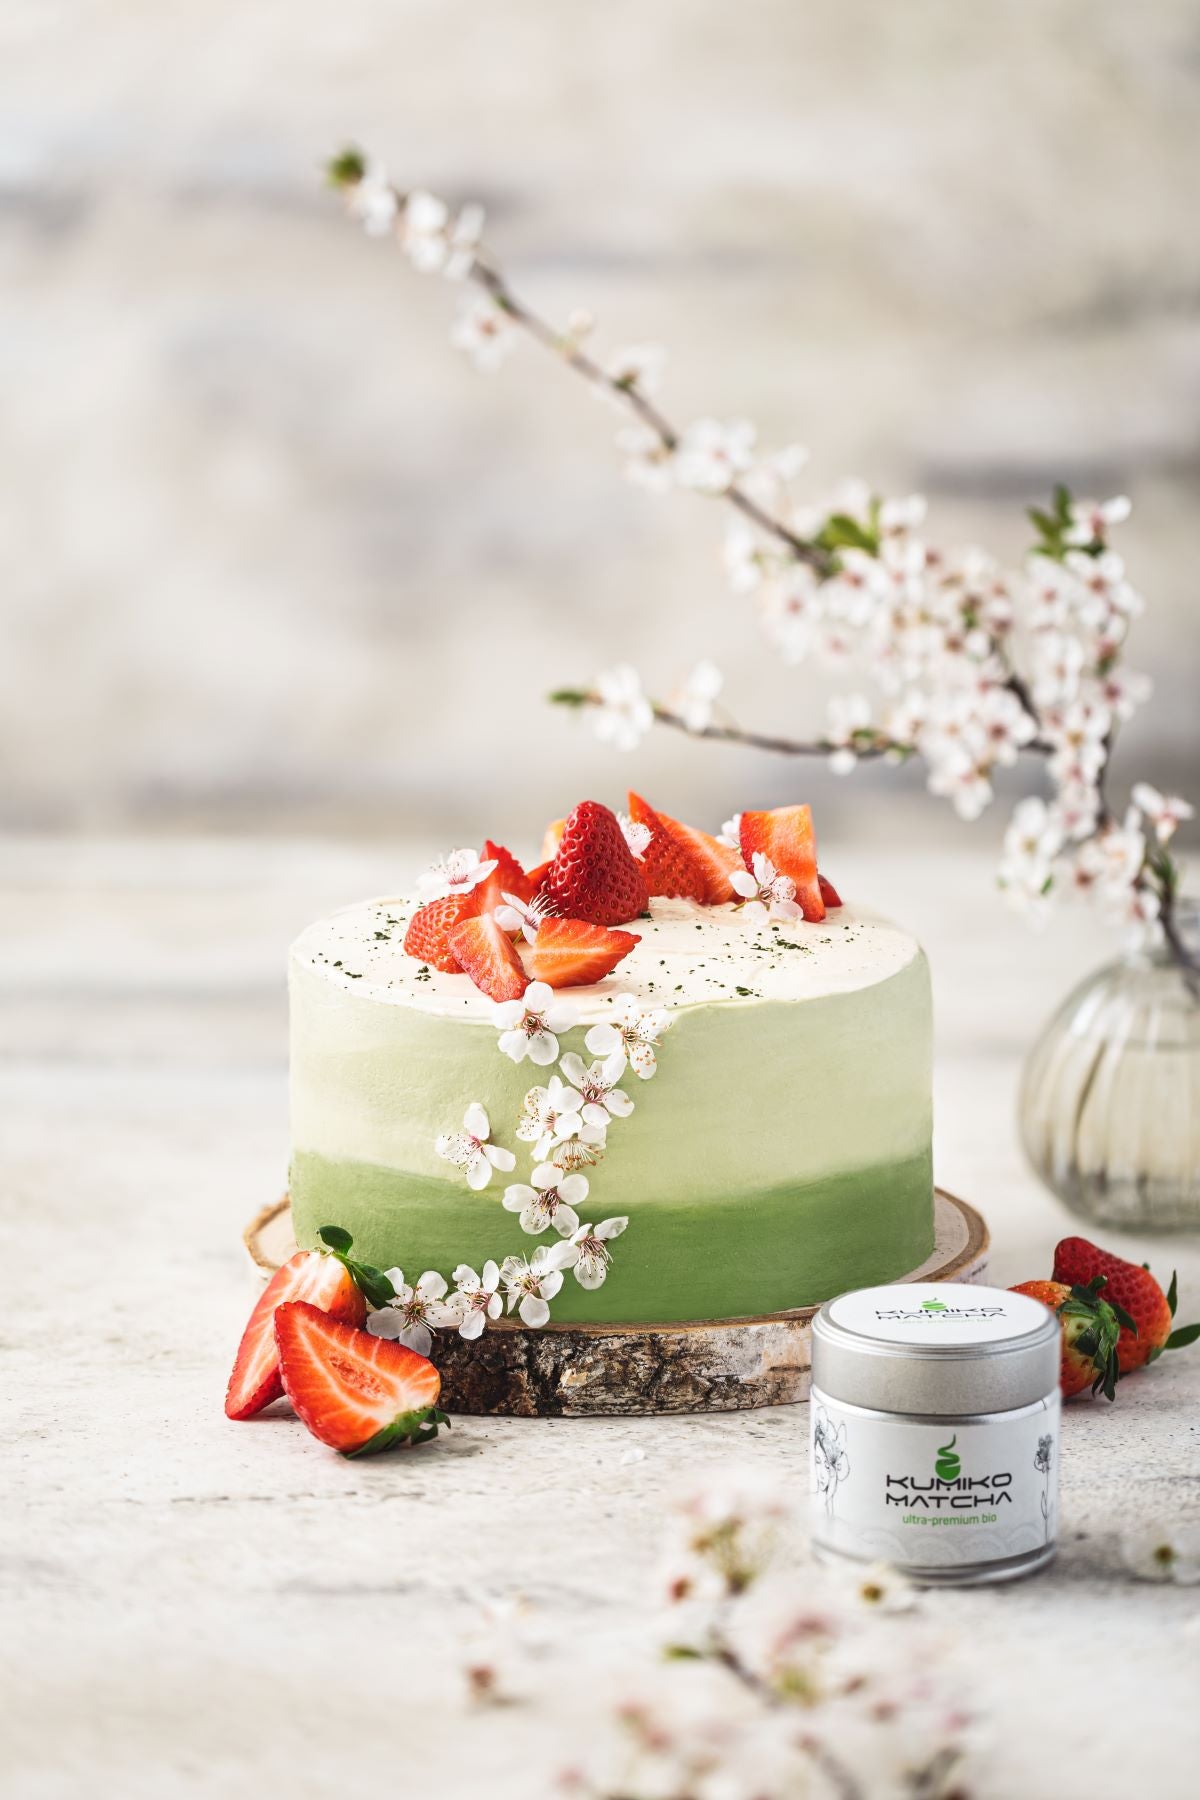 layer cake vegan aux fraises et thé matcha ultra-premium bio